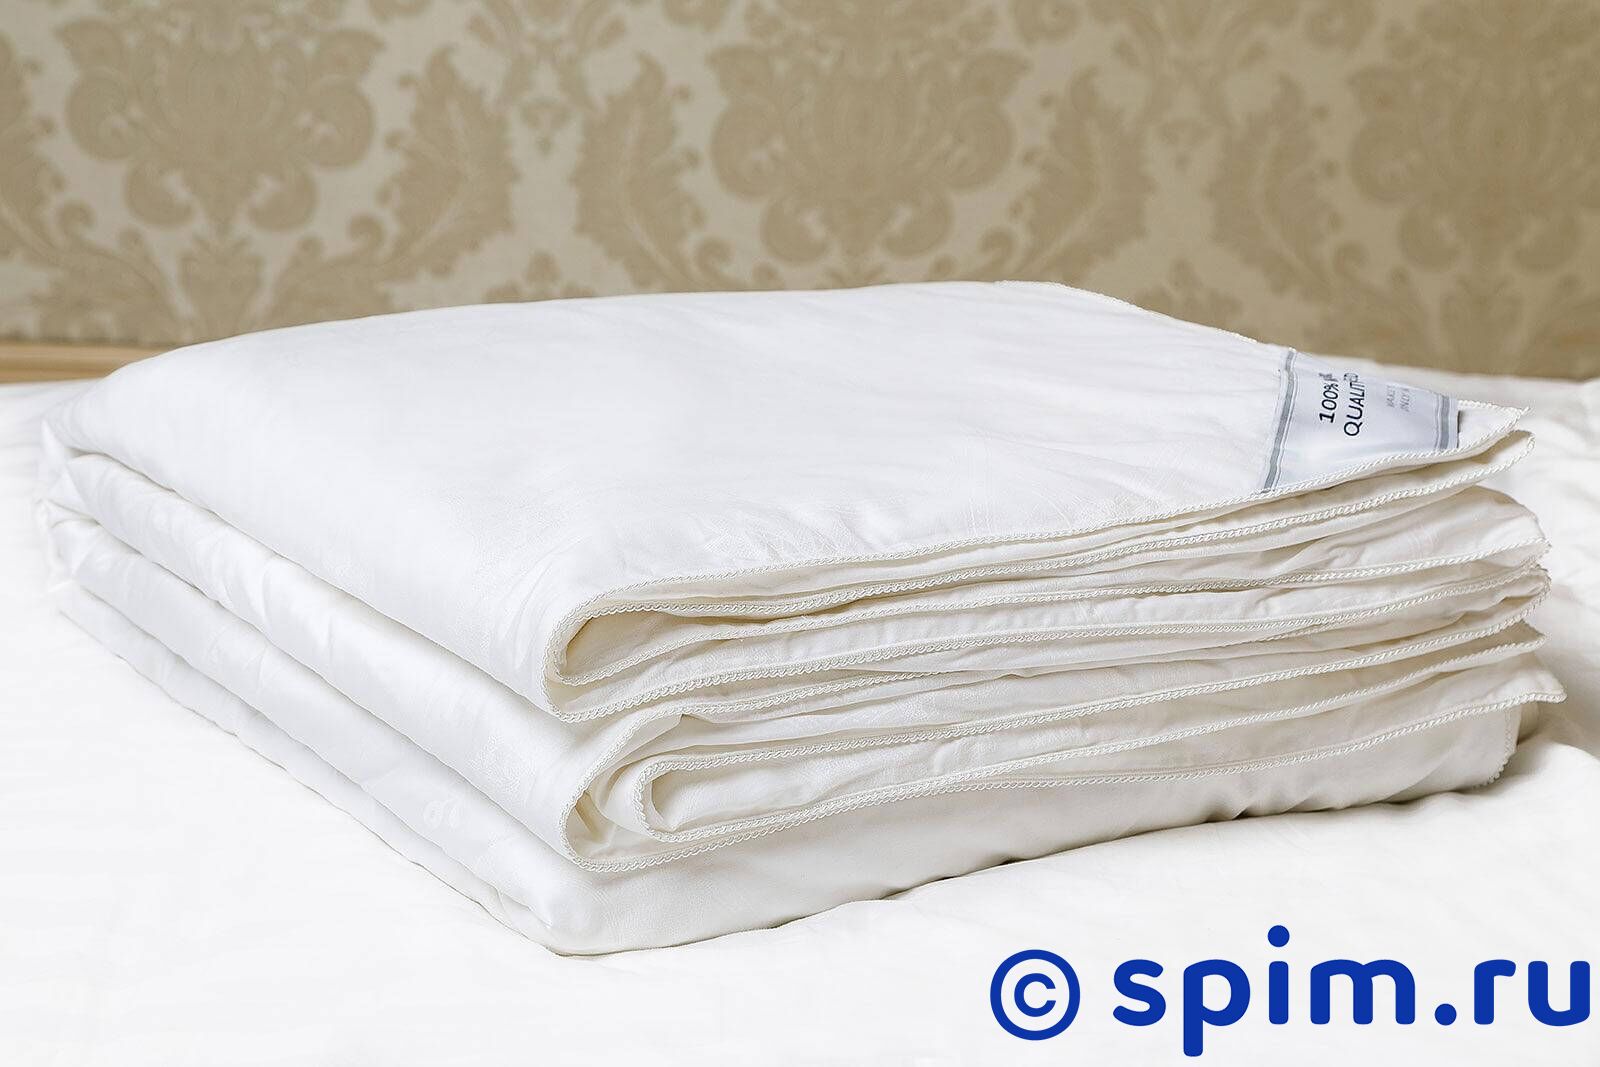 Шелковое одеяло Luxe Dream Premium Silk в съемном чехле, всесезонное 200х220 см